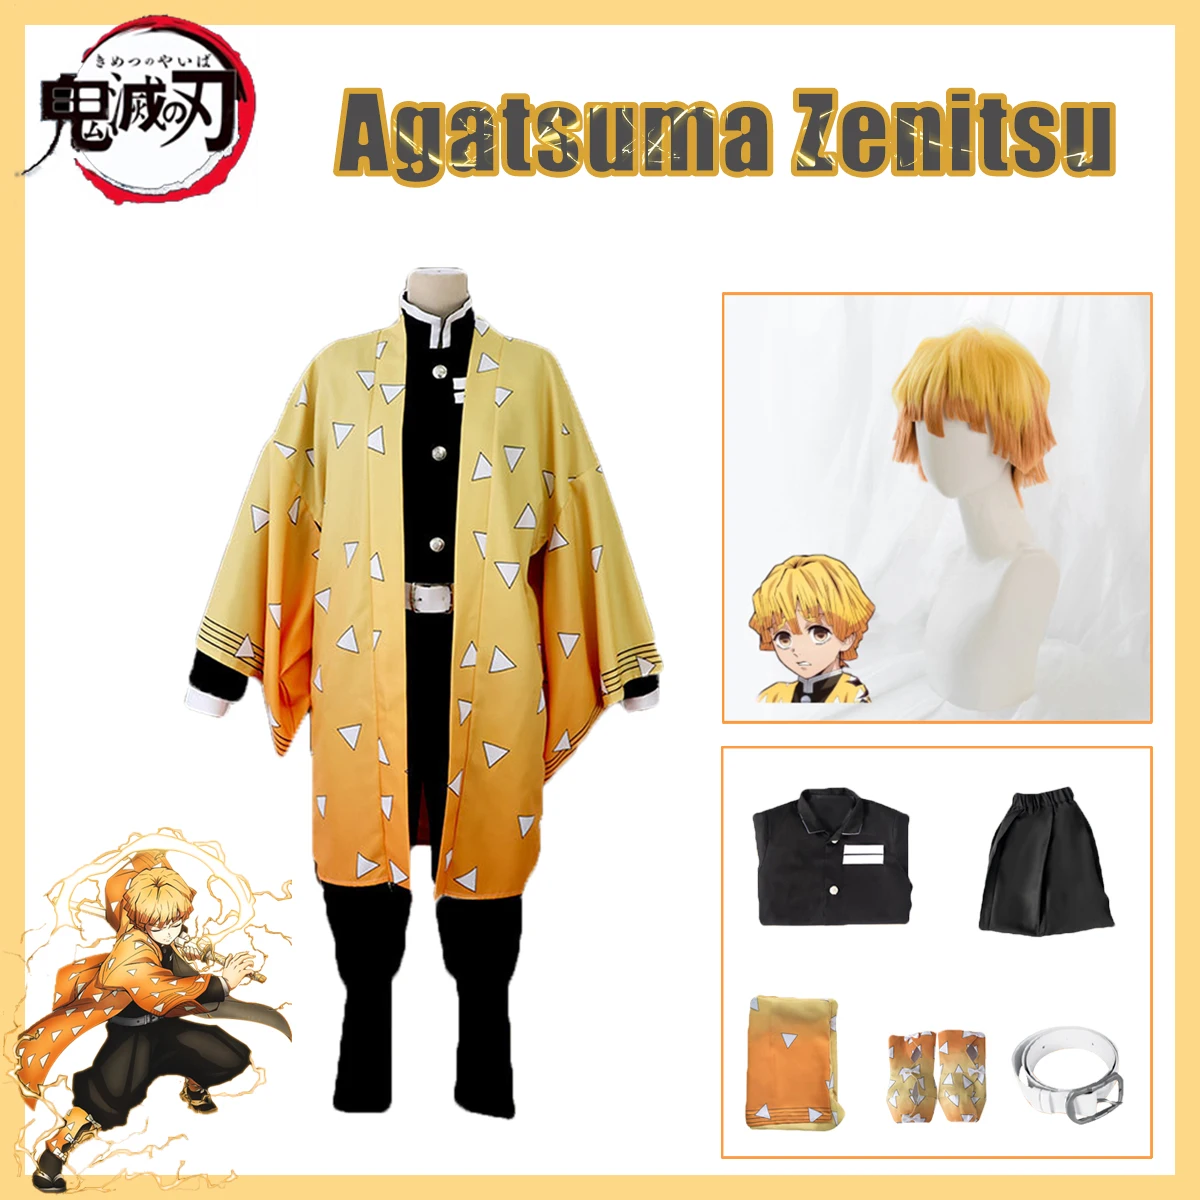 Anime Demon Slayer Agatsuma Zenitsu Cosplay Kimetsu no Yaiba Costume Kimono Uniform Clothes Props Set